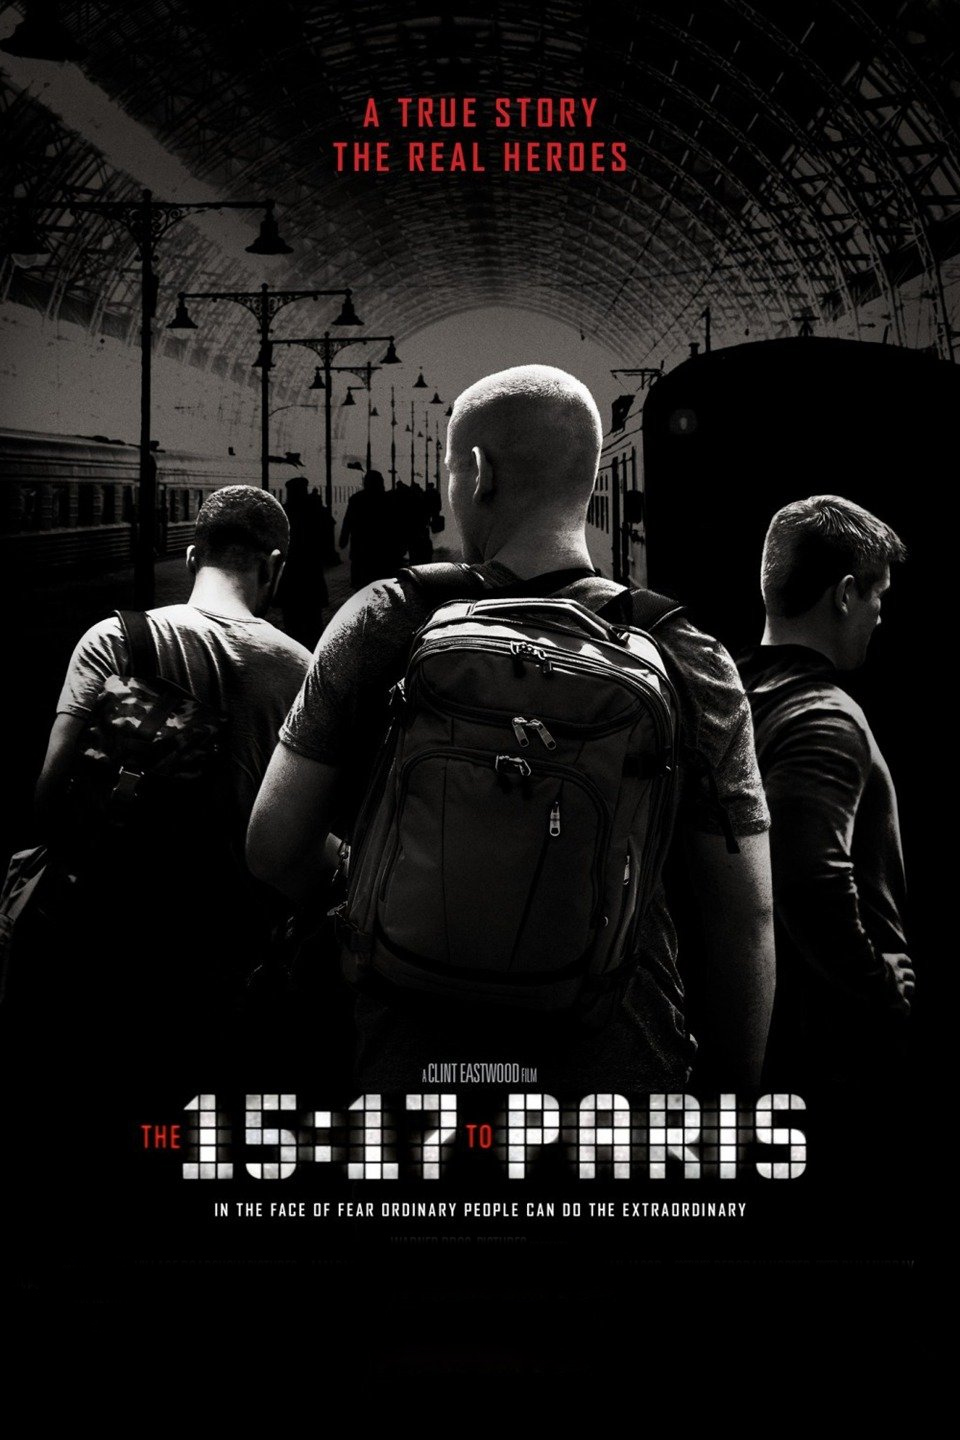 [MINI Super-HQ] The 15:17 to Paris (2018) เดอะ ฟิฟทีน เซเว่นทีน ทู ปารีส [1080p] [เสียงอังกฤษ DTS] [บรรยายไทย + อังกฤษ] [Soundtrack บรรยายไทย + ซับไทย From Blu-Ray MASTER +ซับ PGS คมชัด]